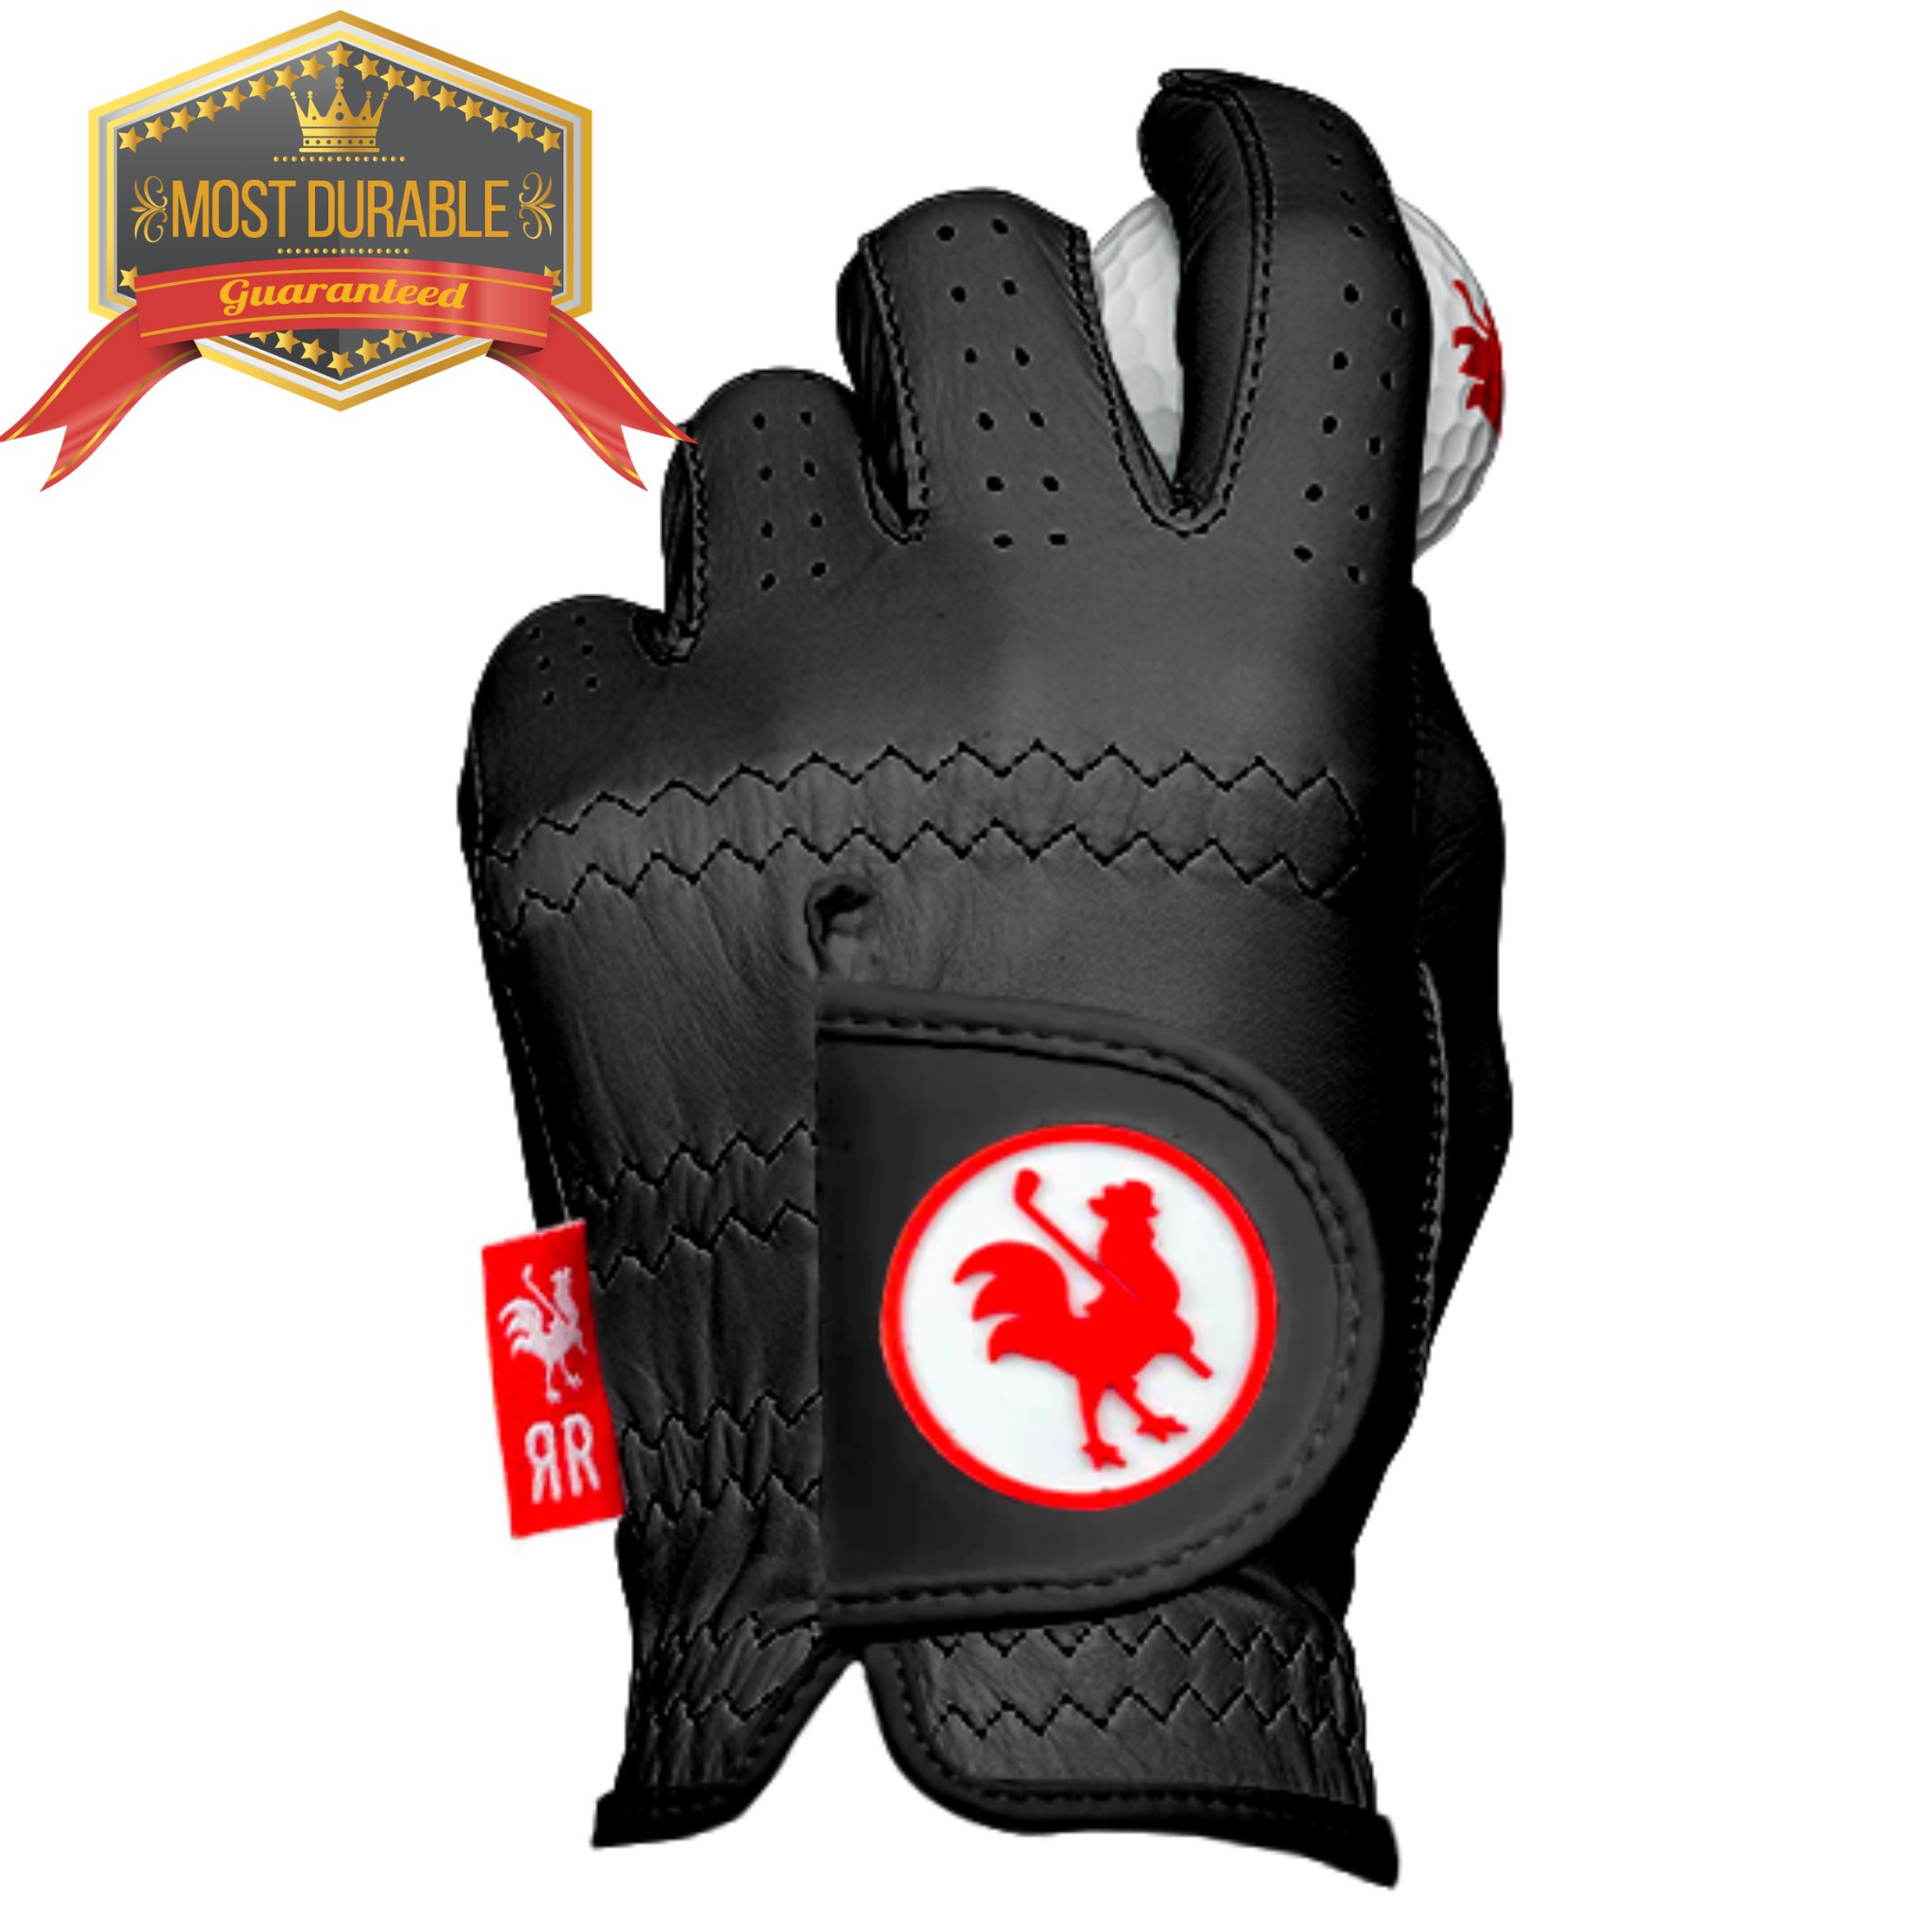 The Saddle golf glove